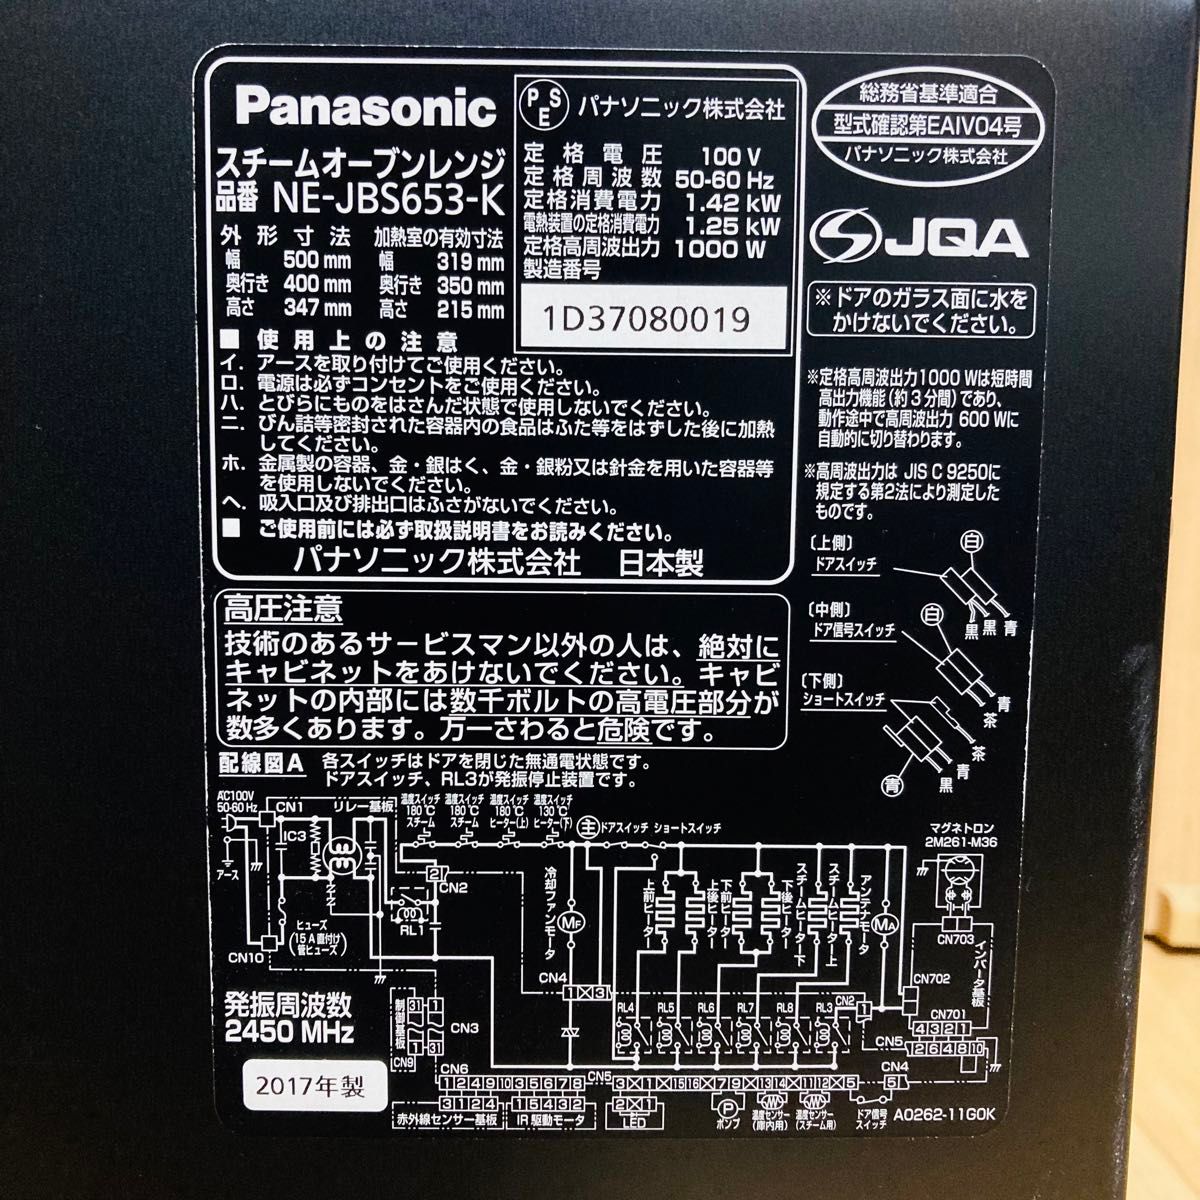 Panasonic パナソニック NE-JBS653-K スチームオーブンレンジ